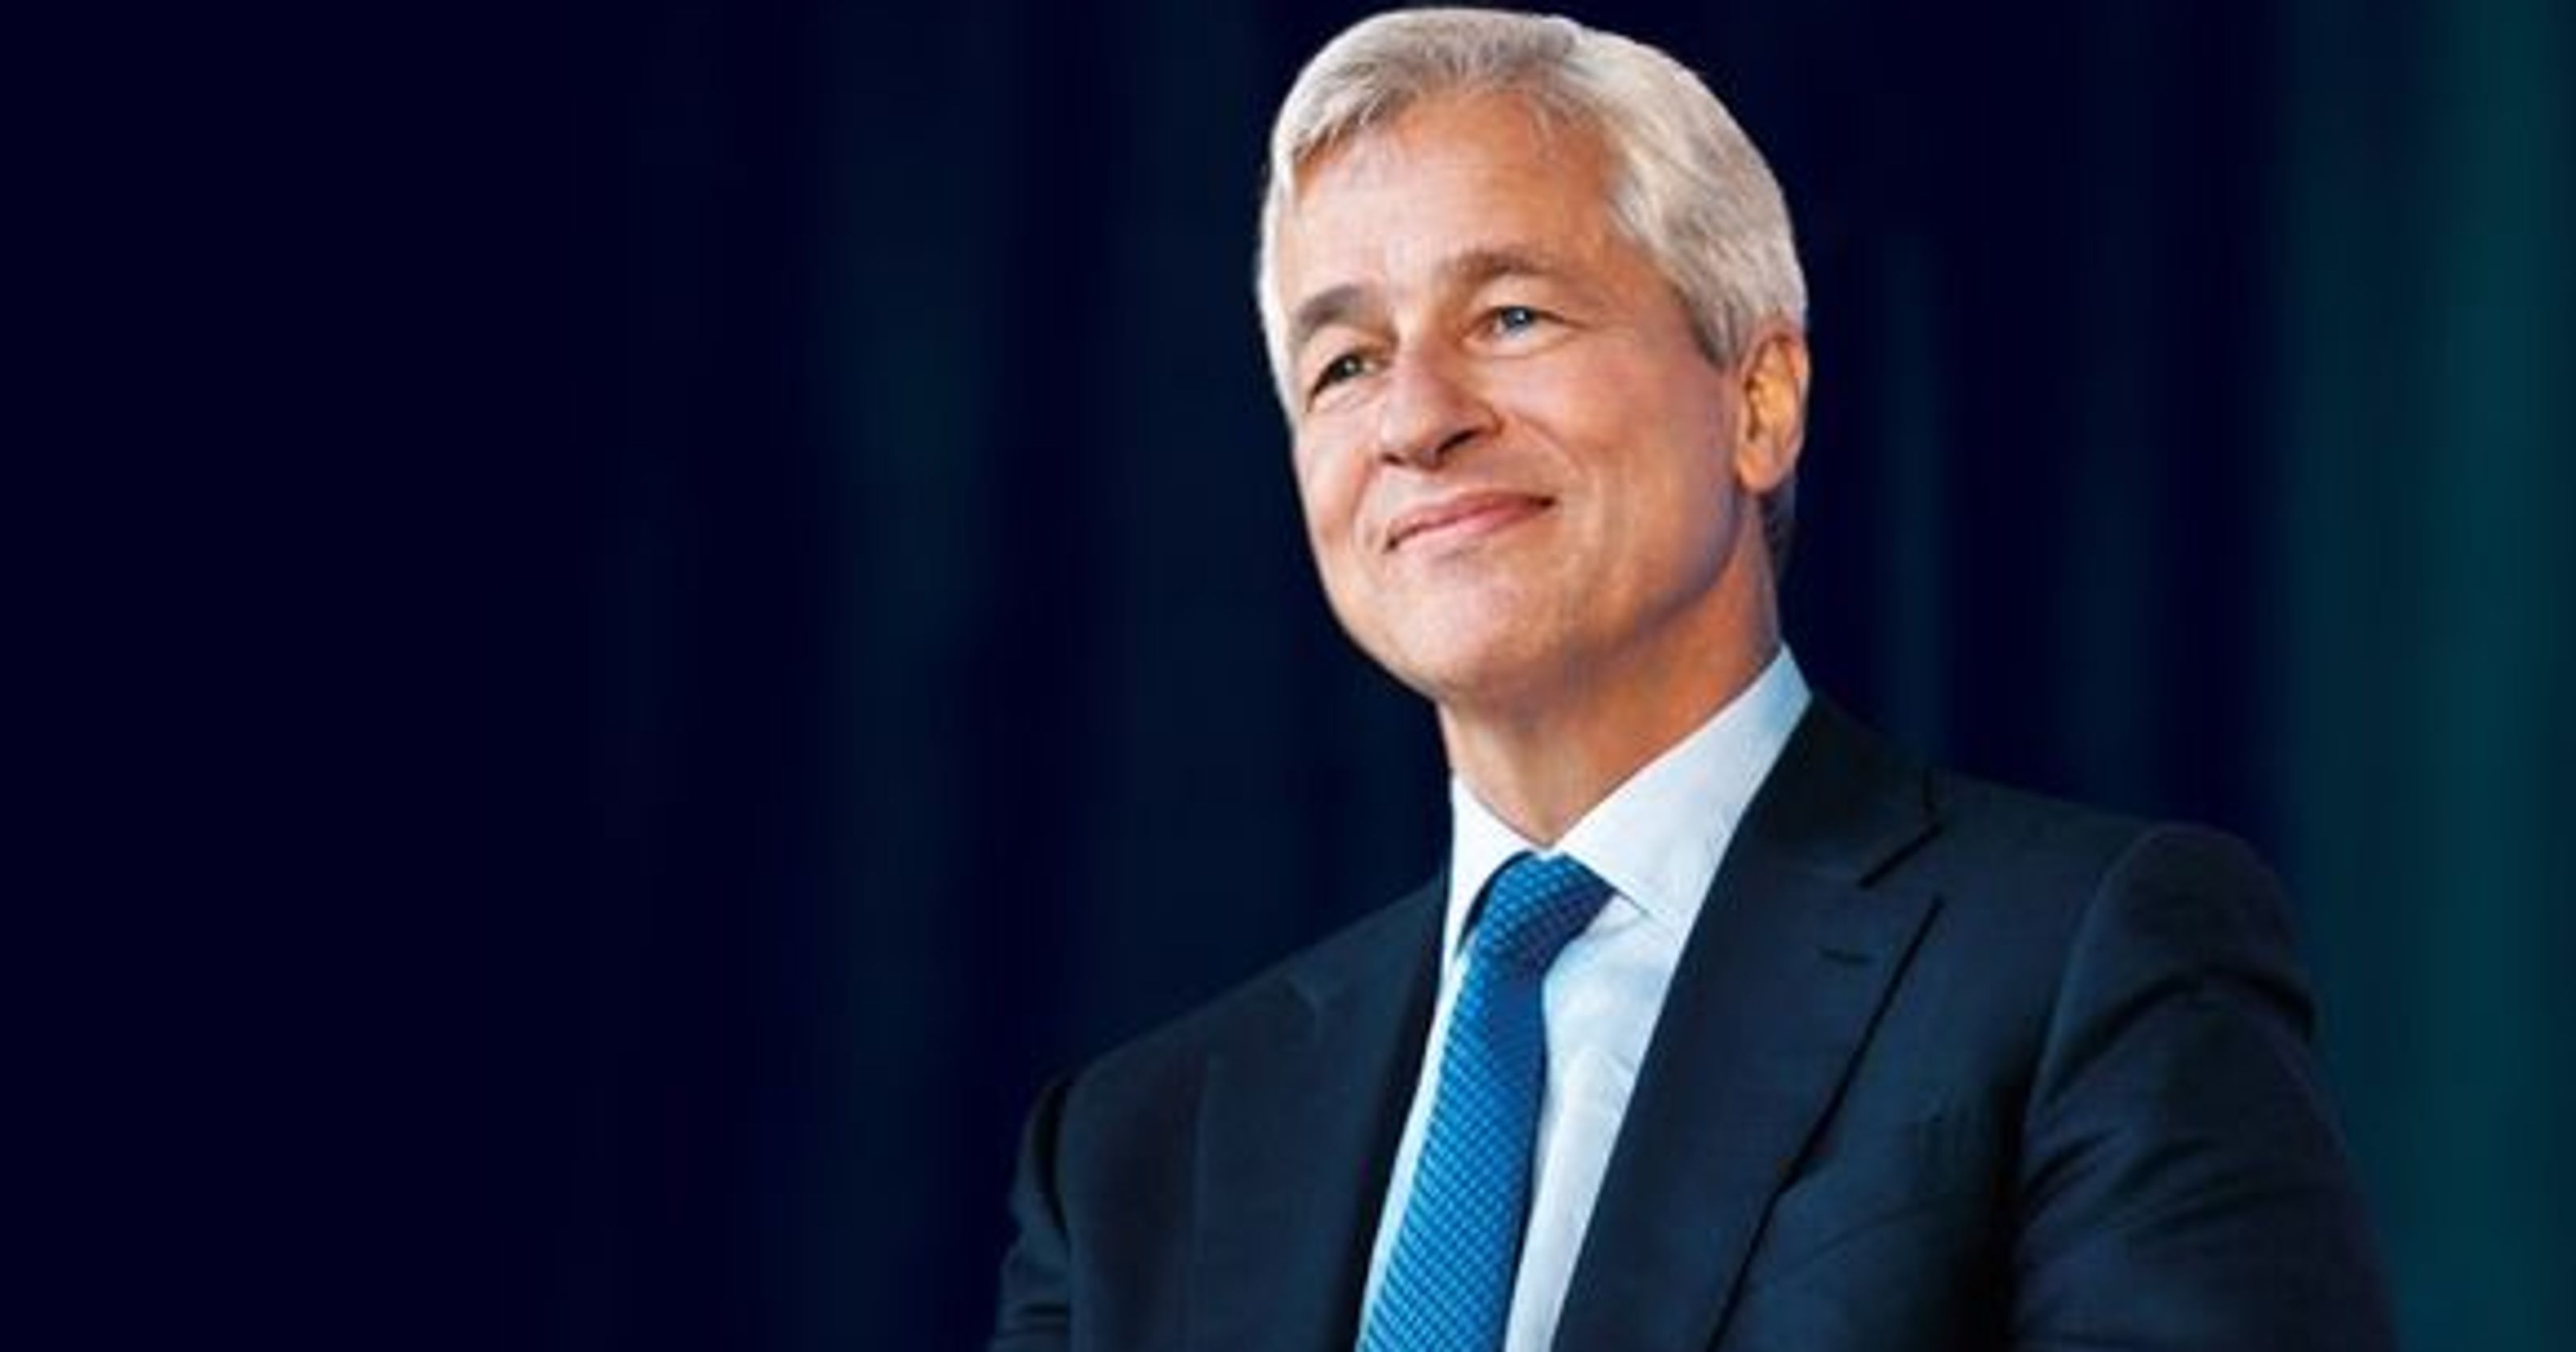 Jamie Dimon - Chủ tịch kiêm CEO của JPMorgan Chase, ngân hàng thương mại lớn nhất Hoa Kỳ